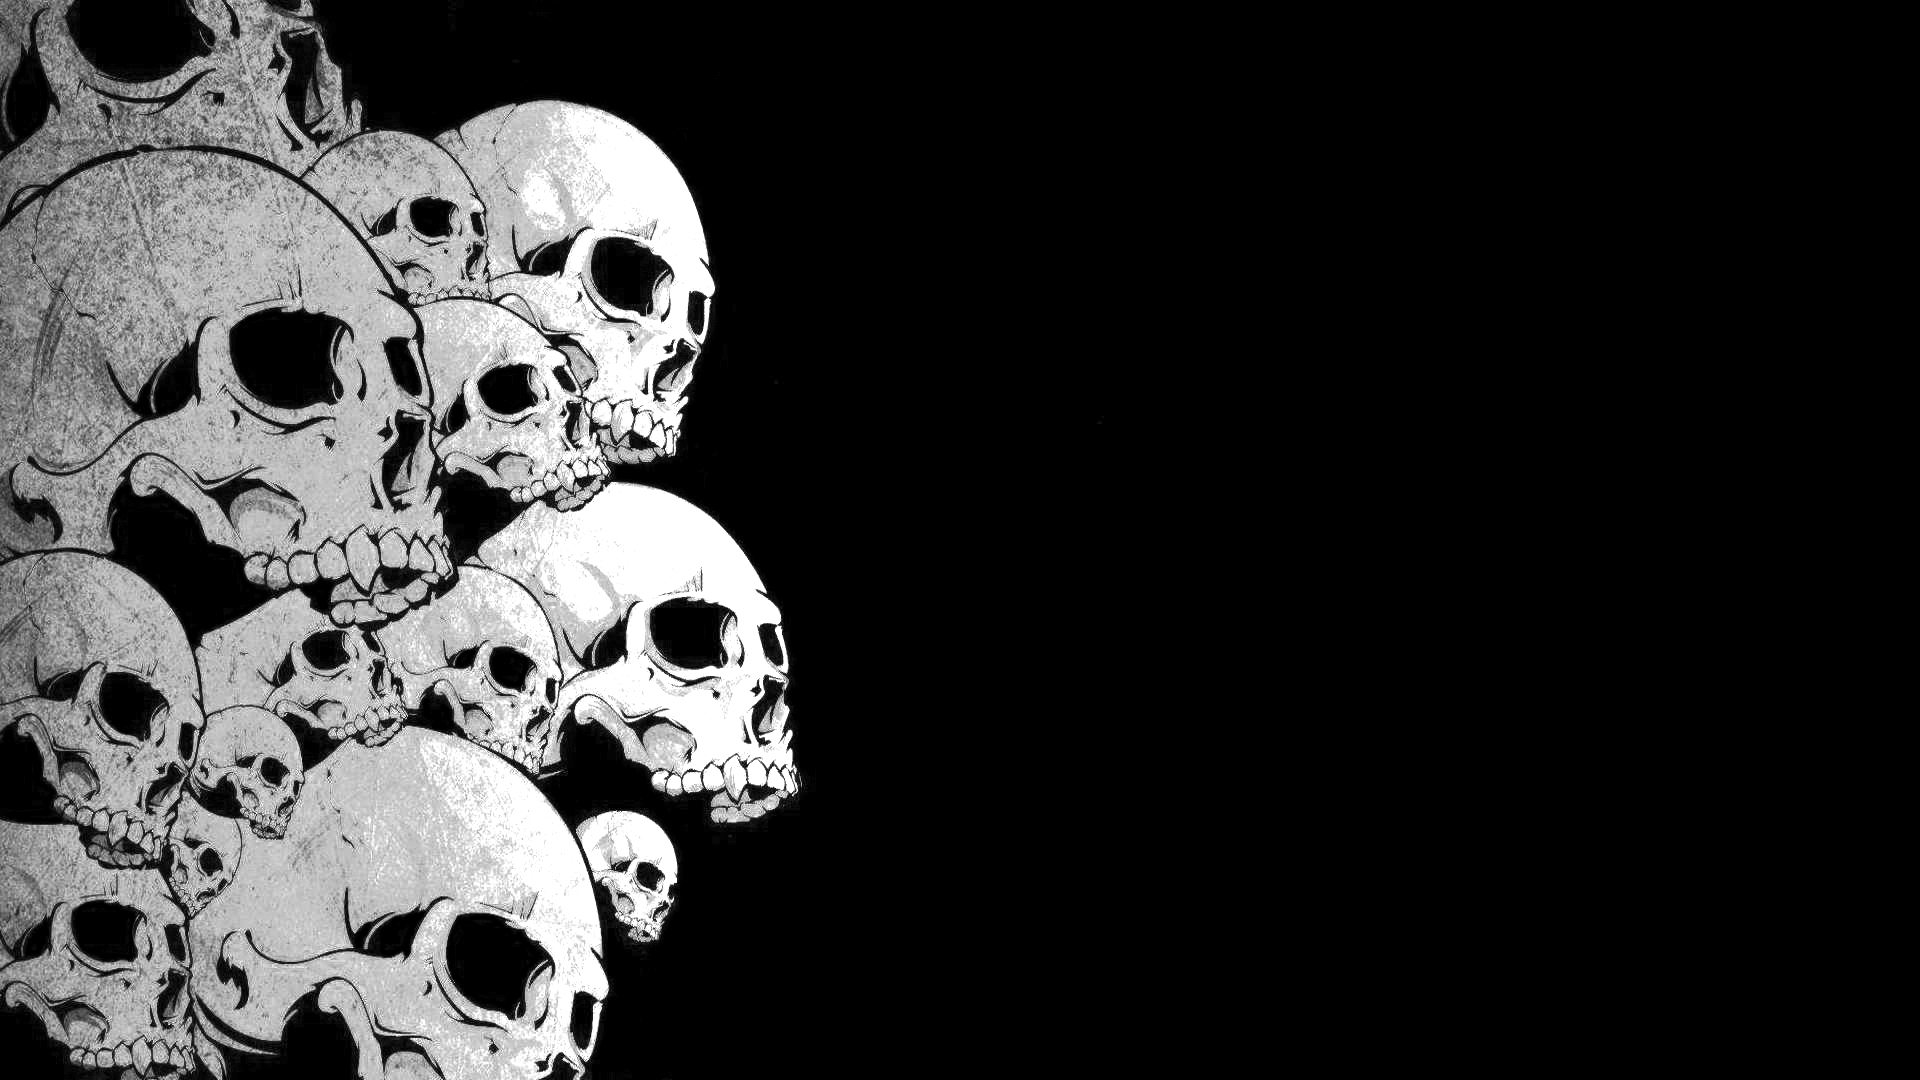 Download mobile wallpaper Skull, Dark for free.